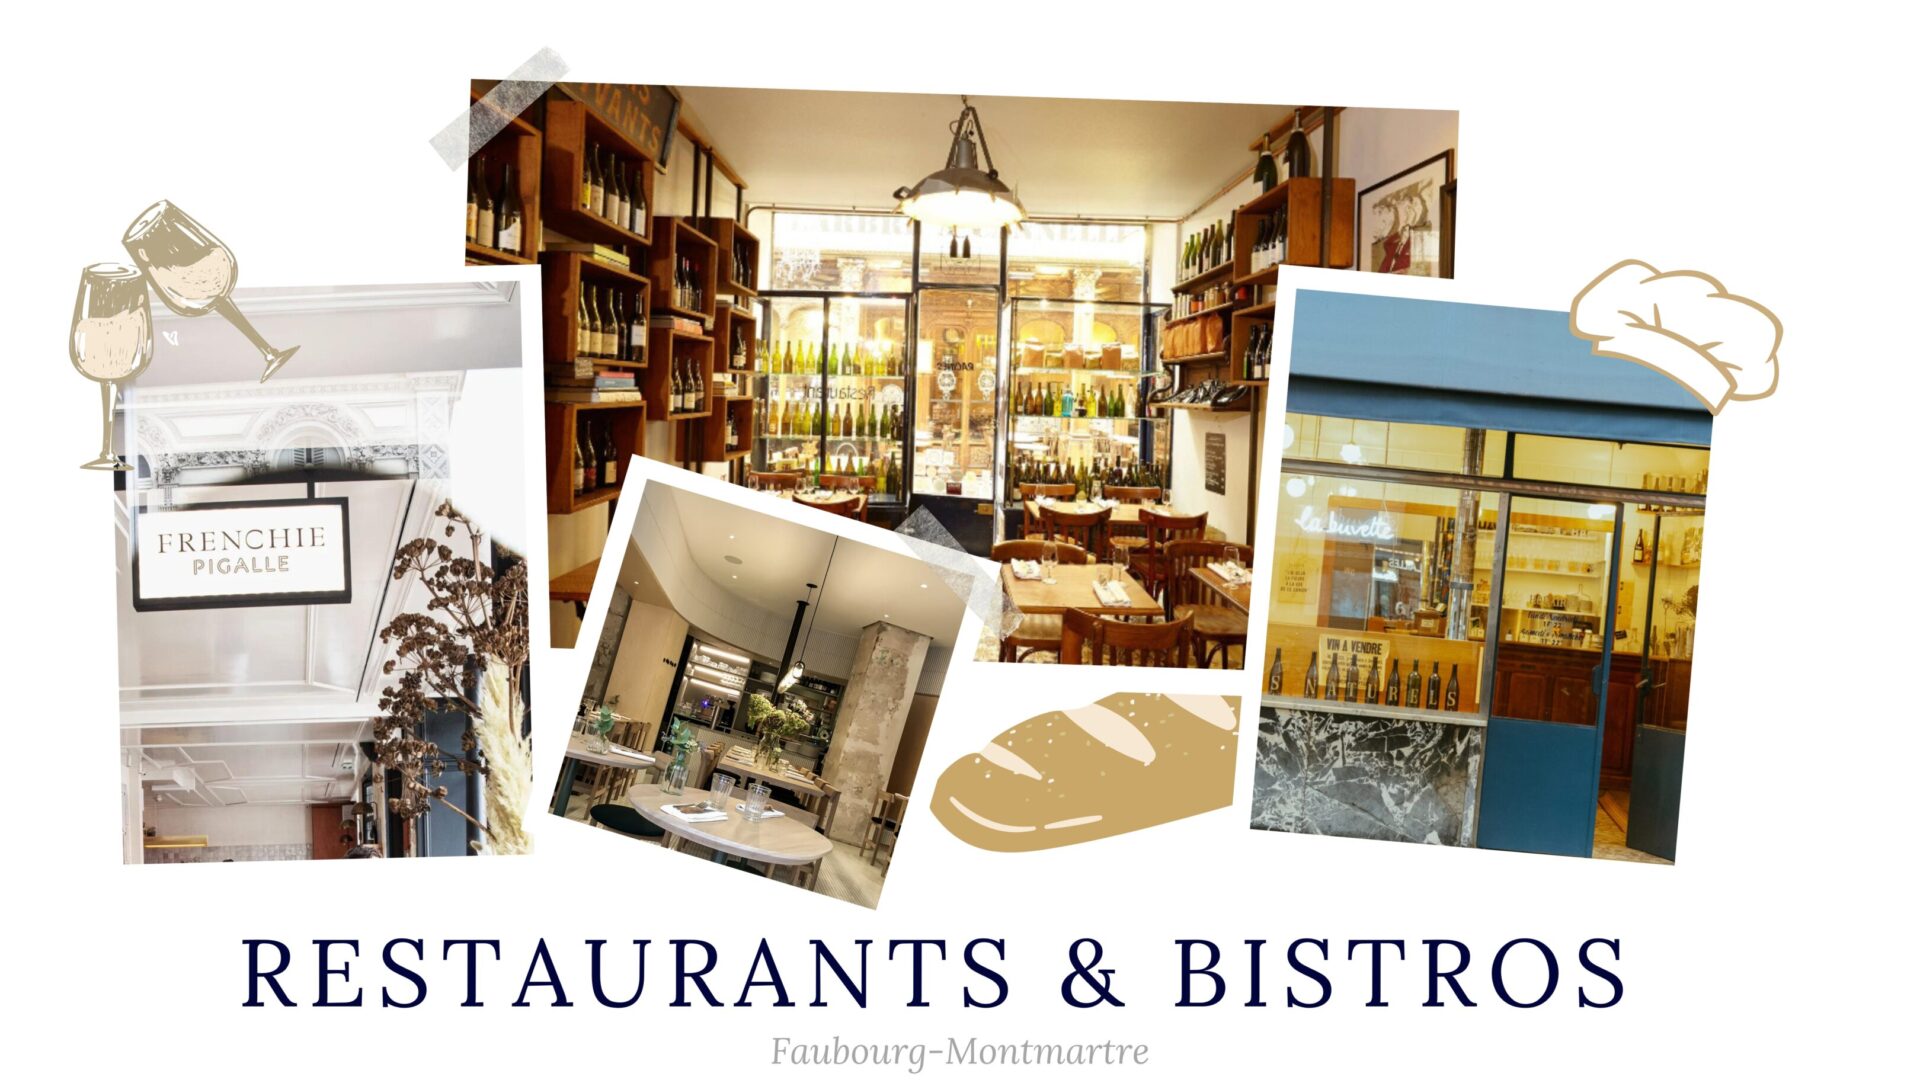 Images of Restaurants & Bistros in Paris